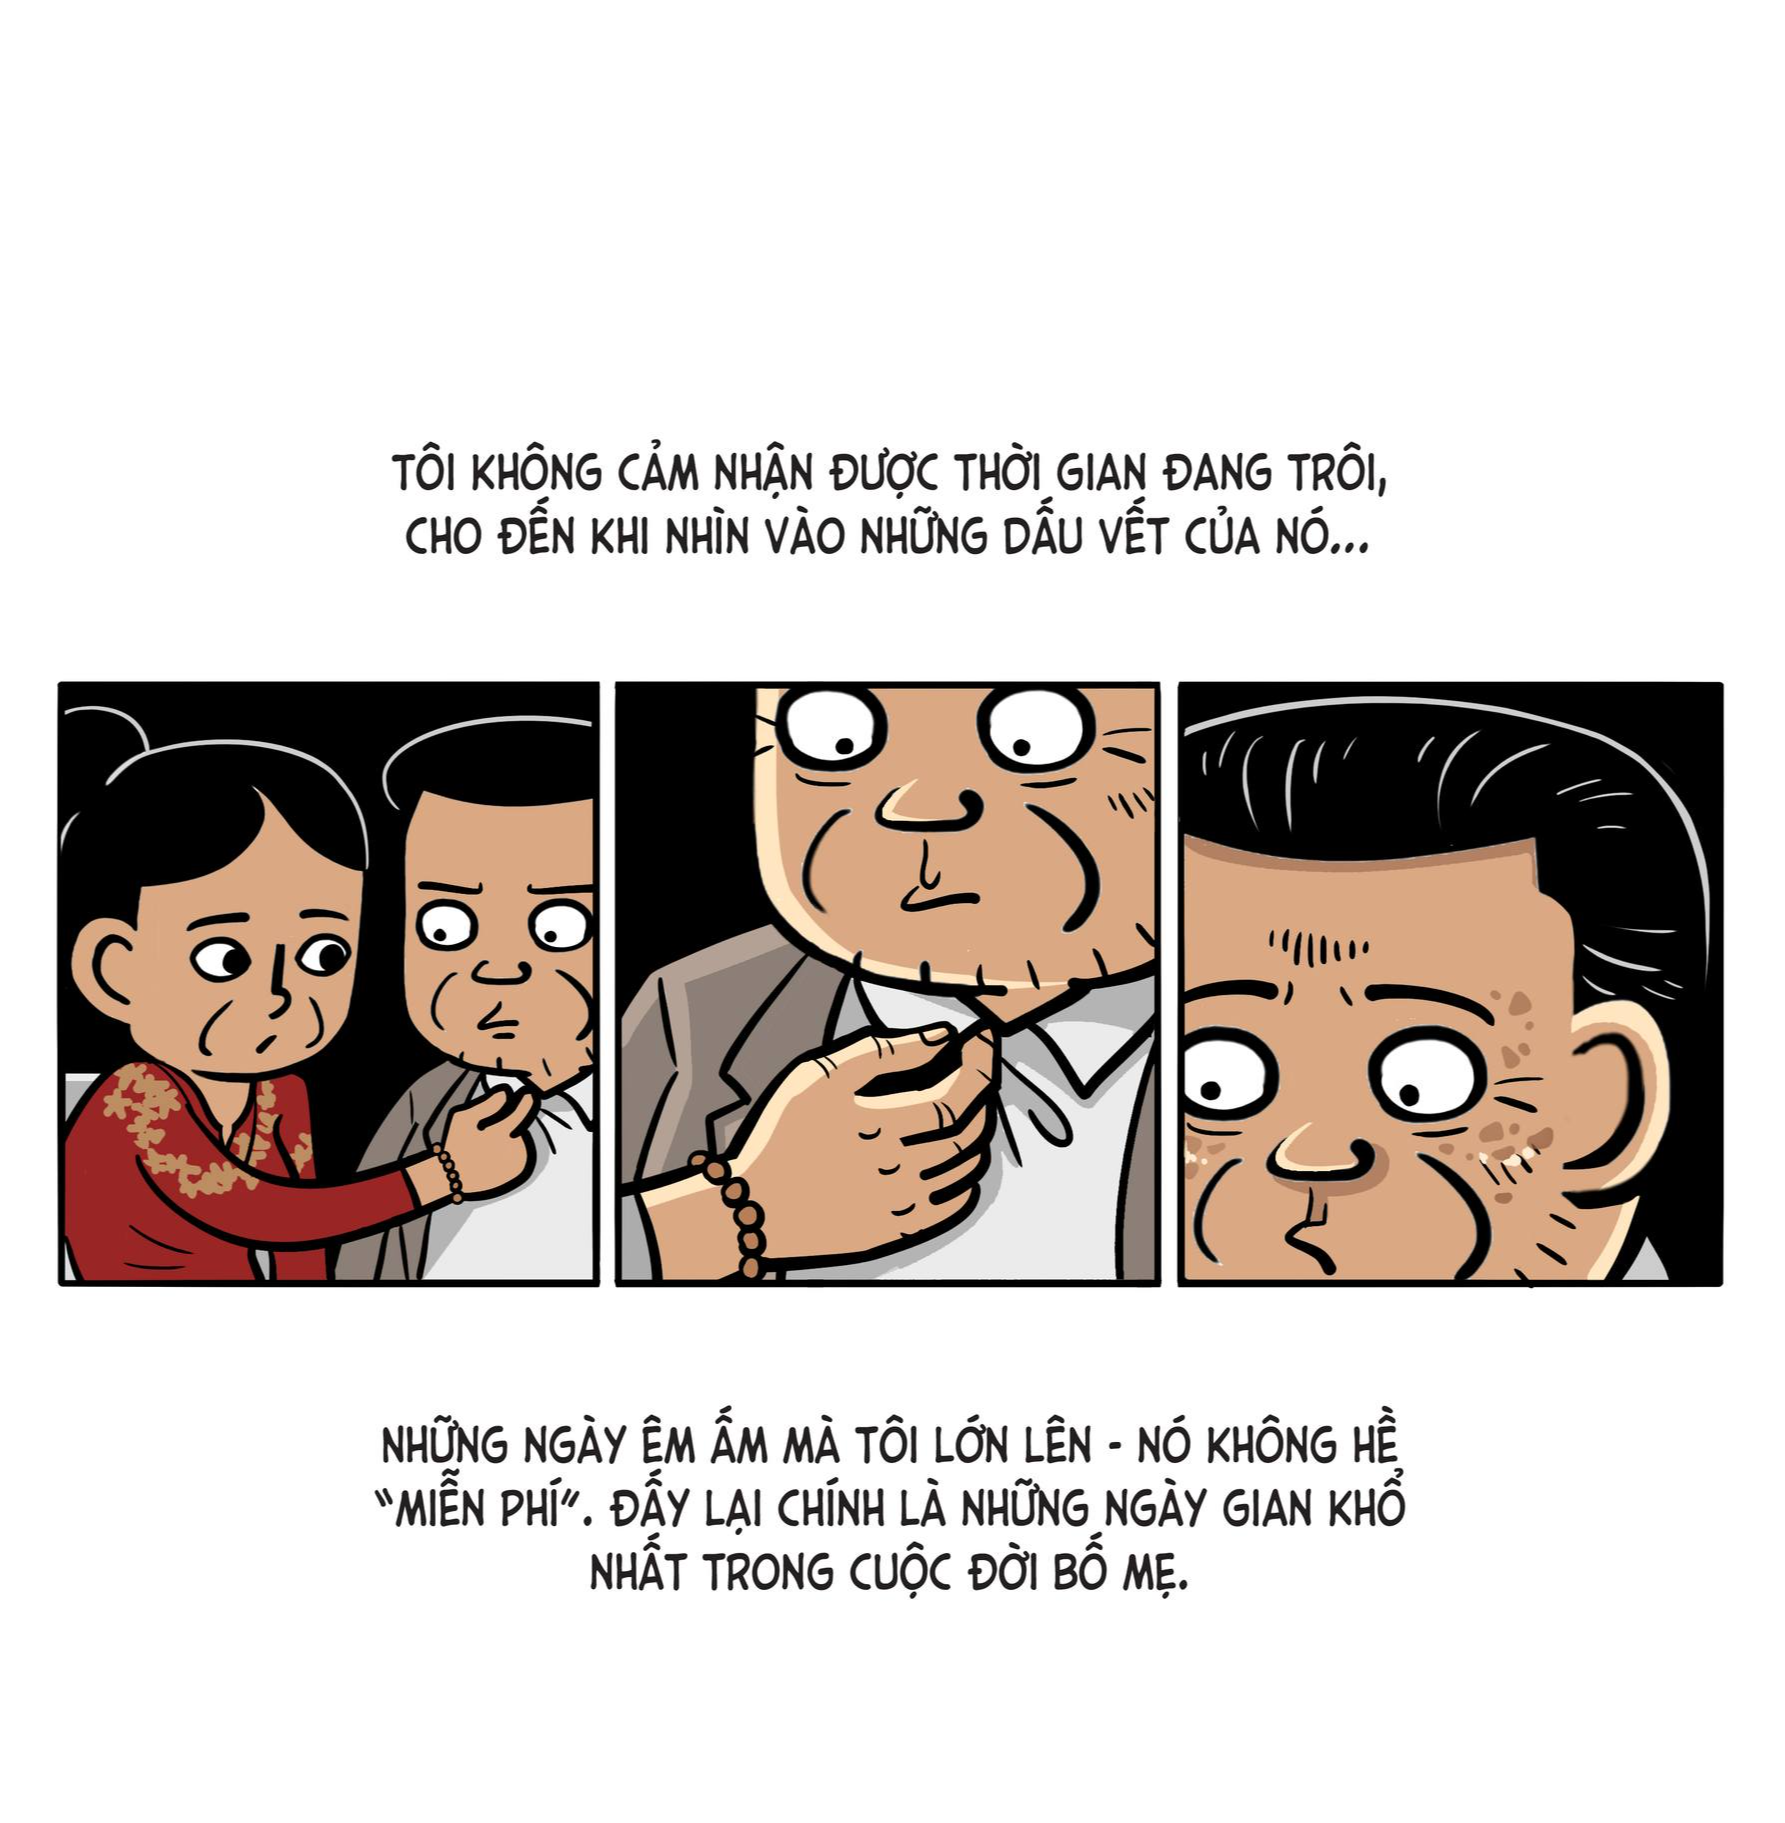 “Bố và con gái”: Bộ truyện tranh về tình cảm gia đình khiến cộng đồng mạng xúc động - Ảnh 7.